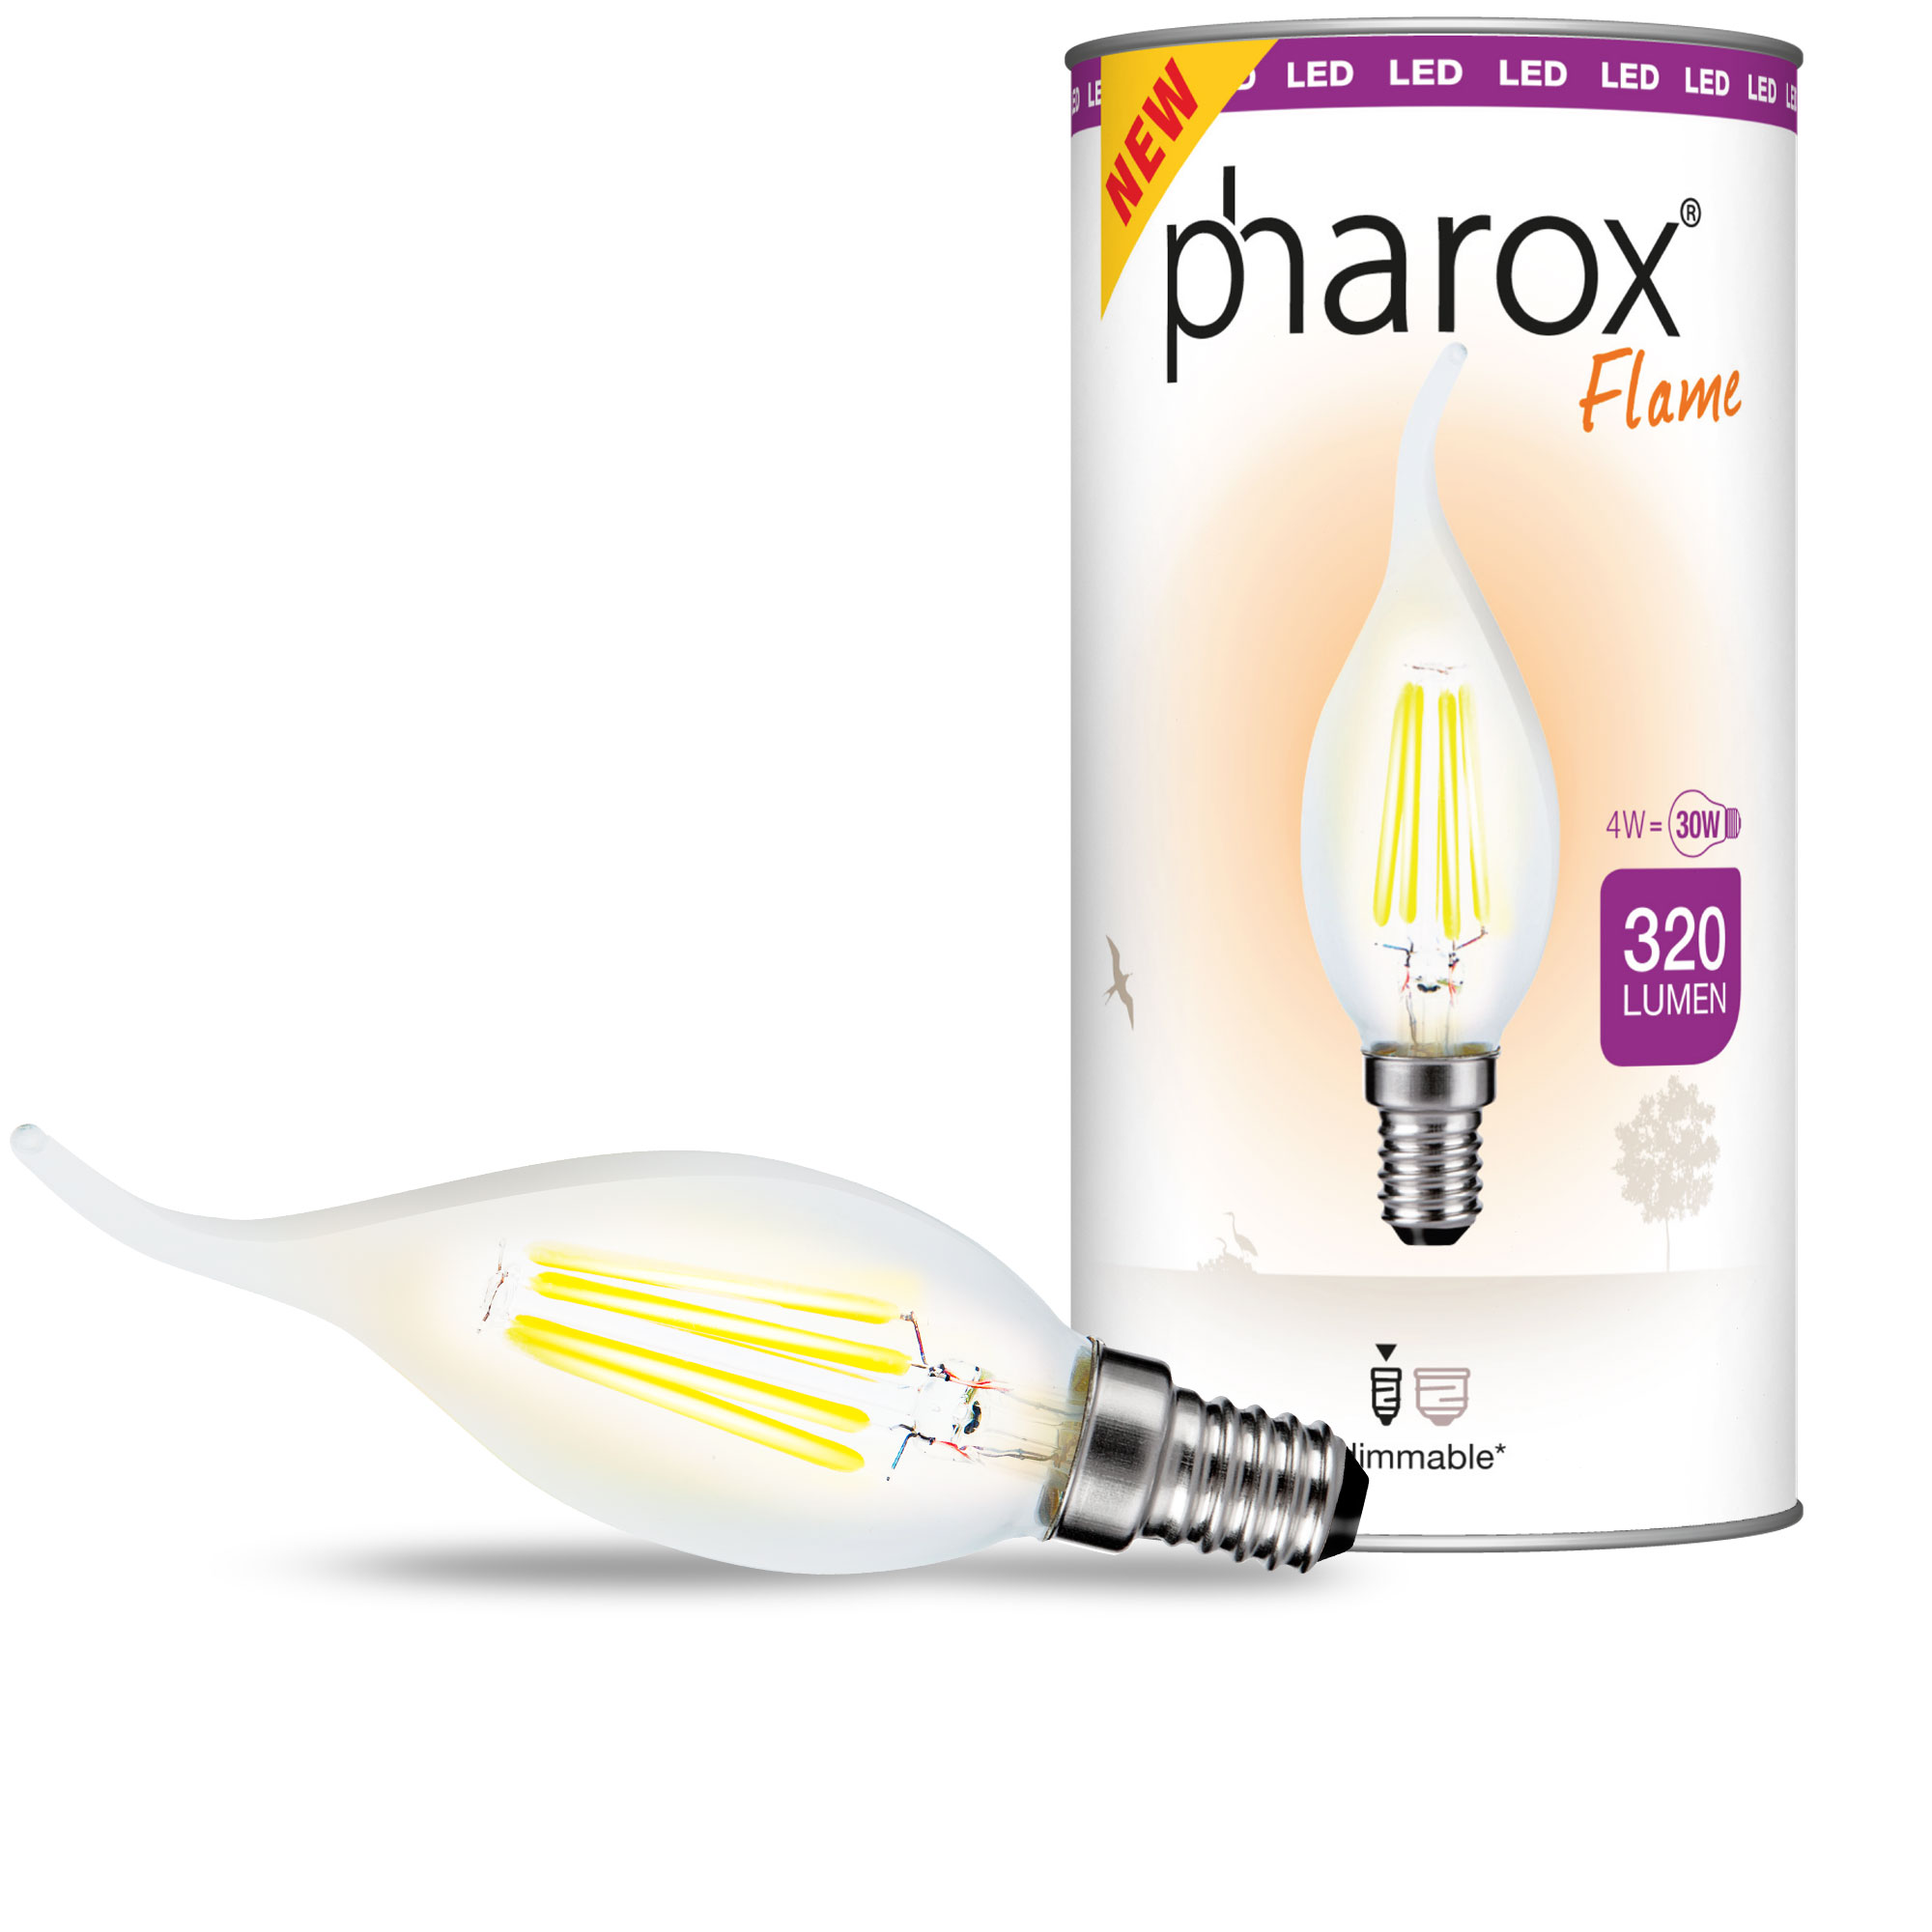 Svíčková lampa Pharox LED Tip čirý plamen E14 4W 320 lumenů